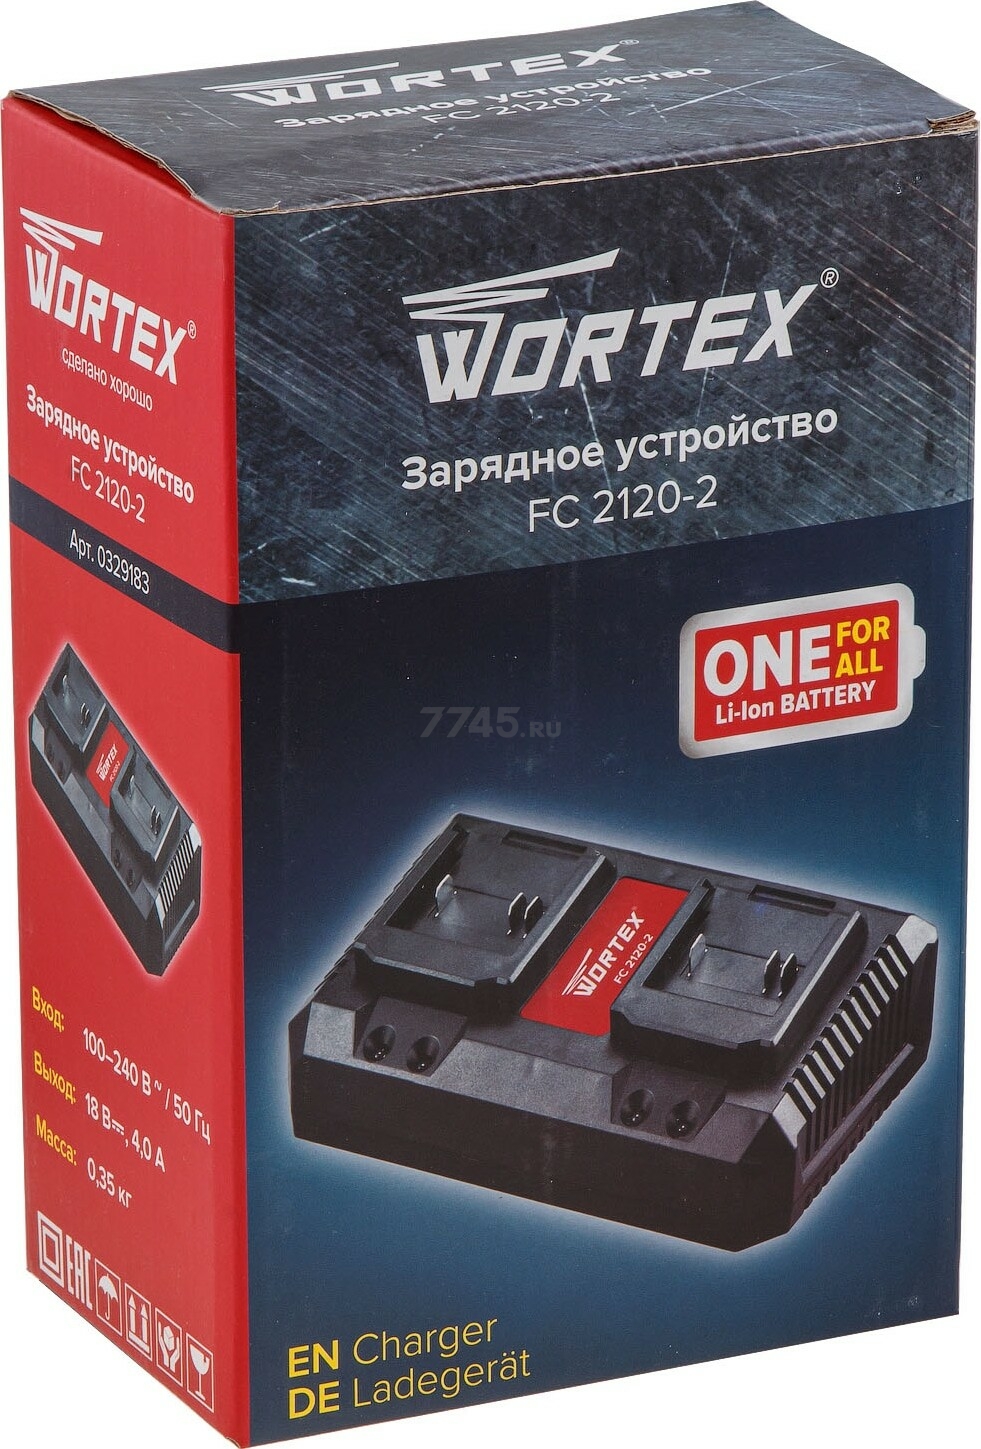 Зарядное устройство WORTEX FC 2120-2 ALL1 (0329183) - Фото 5